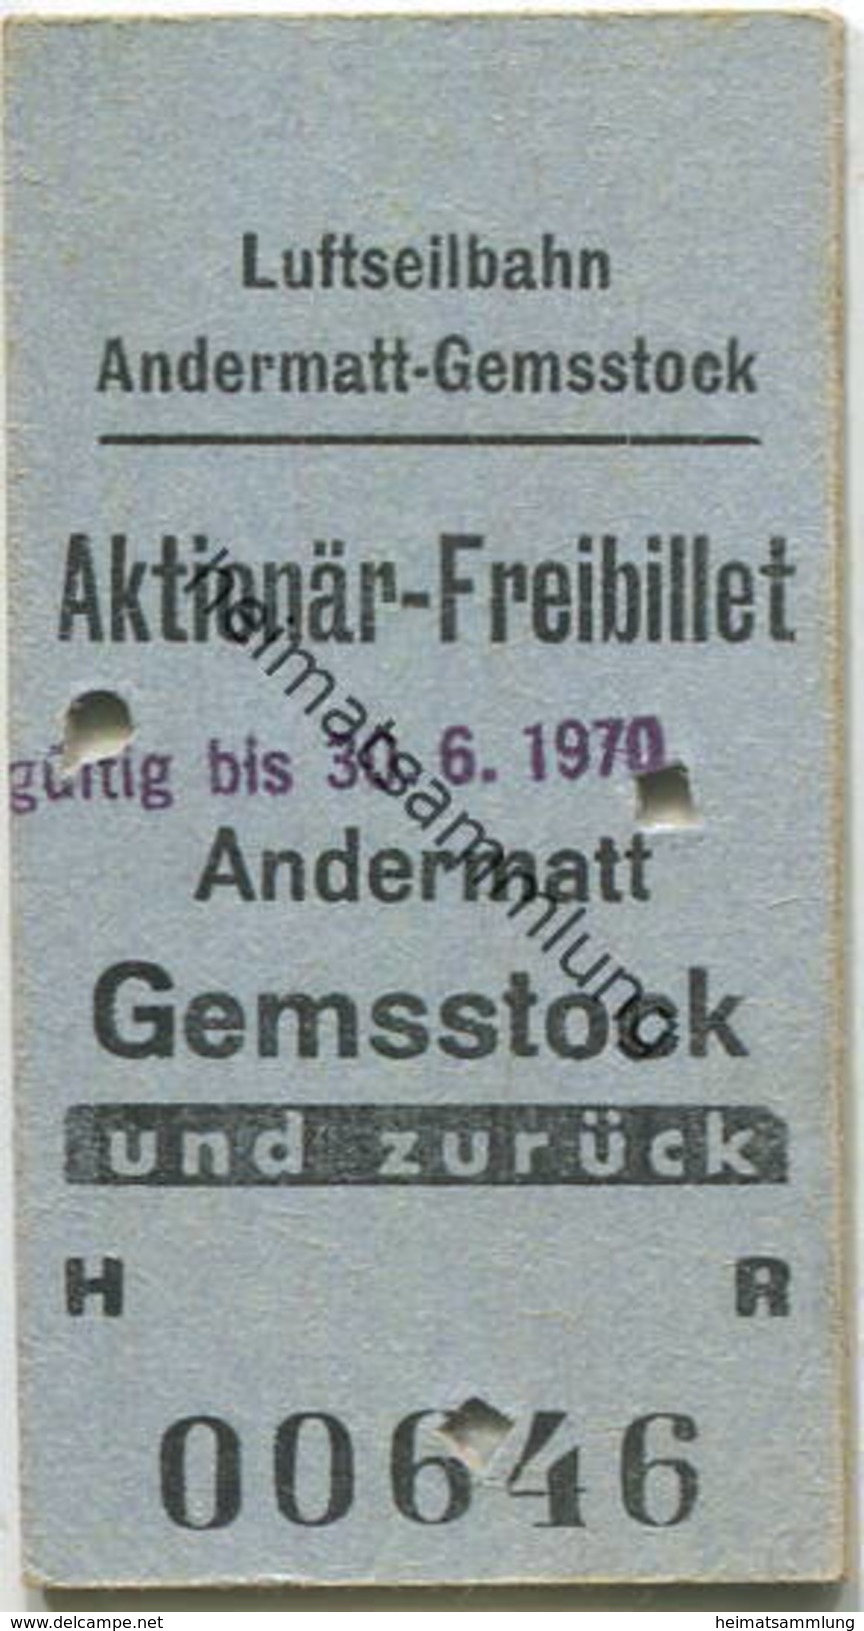 Schweiz - Luftseilbahn Andermatt Gemsstock - Aktionär-Freibillet Gültig Bis 30. 6. 1970 - Europe